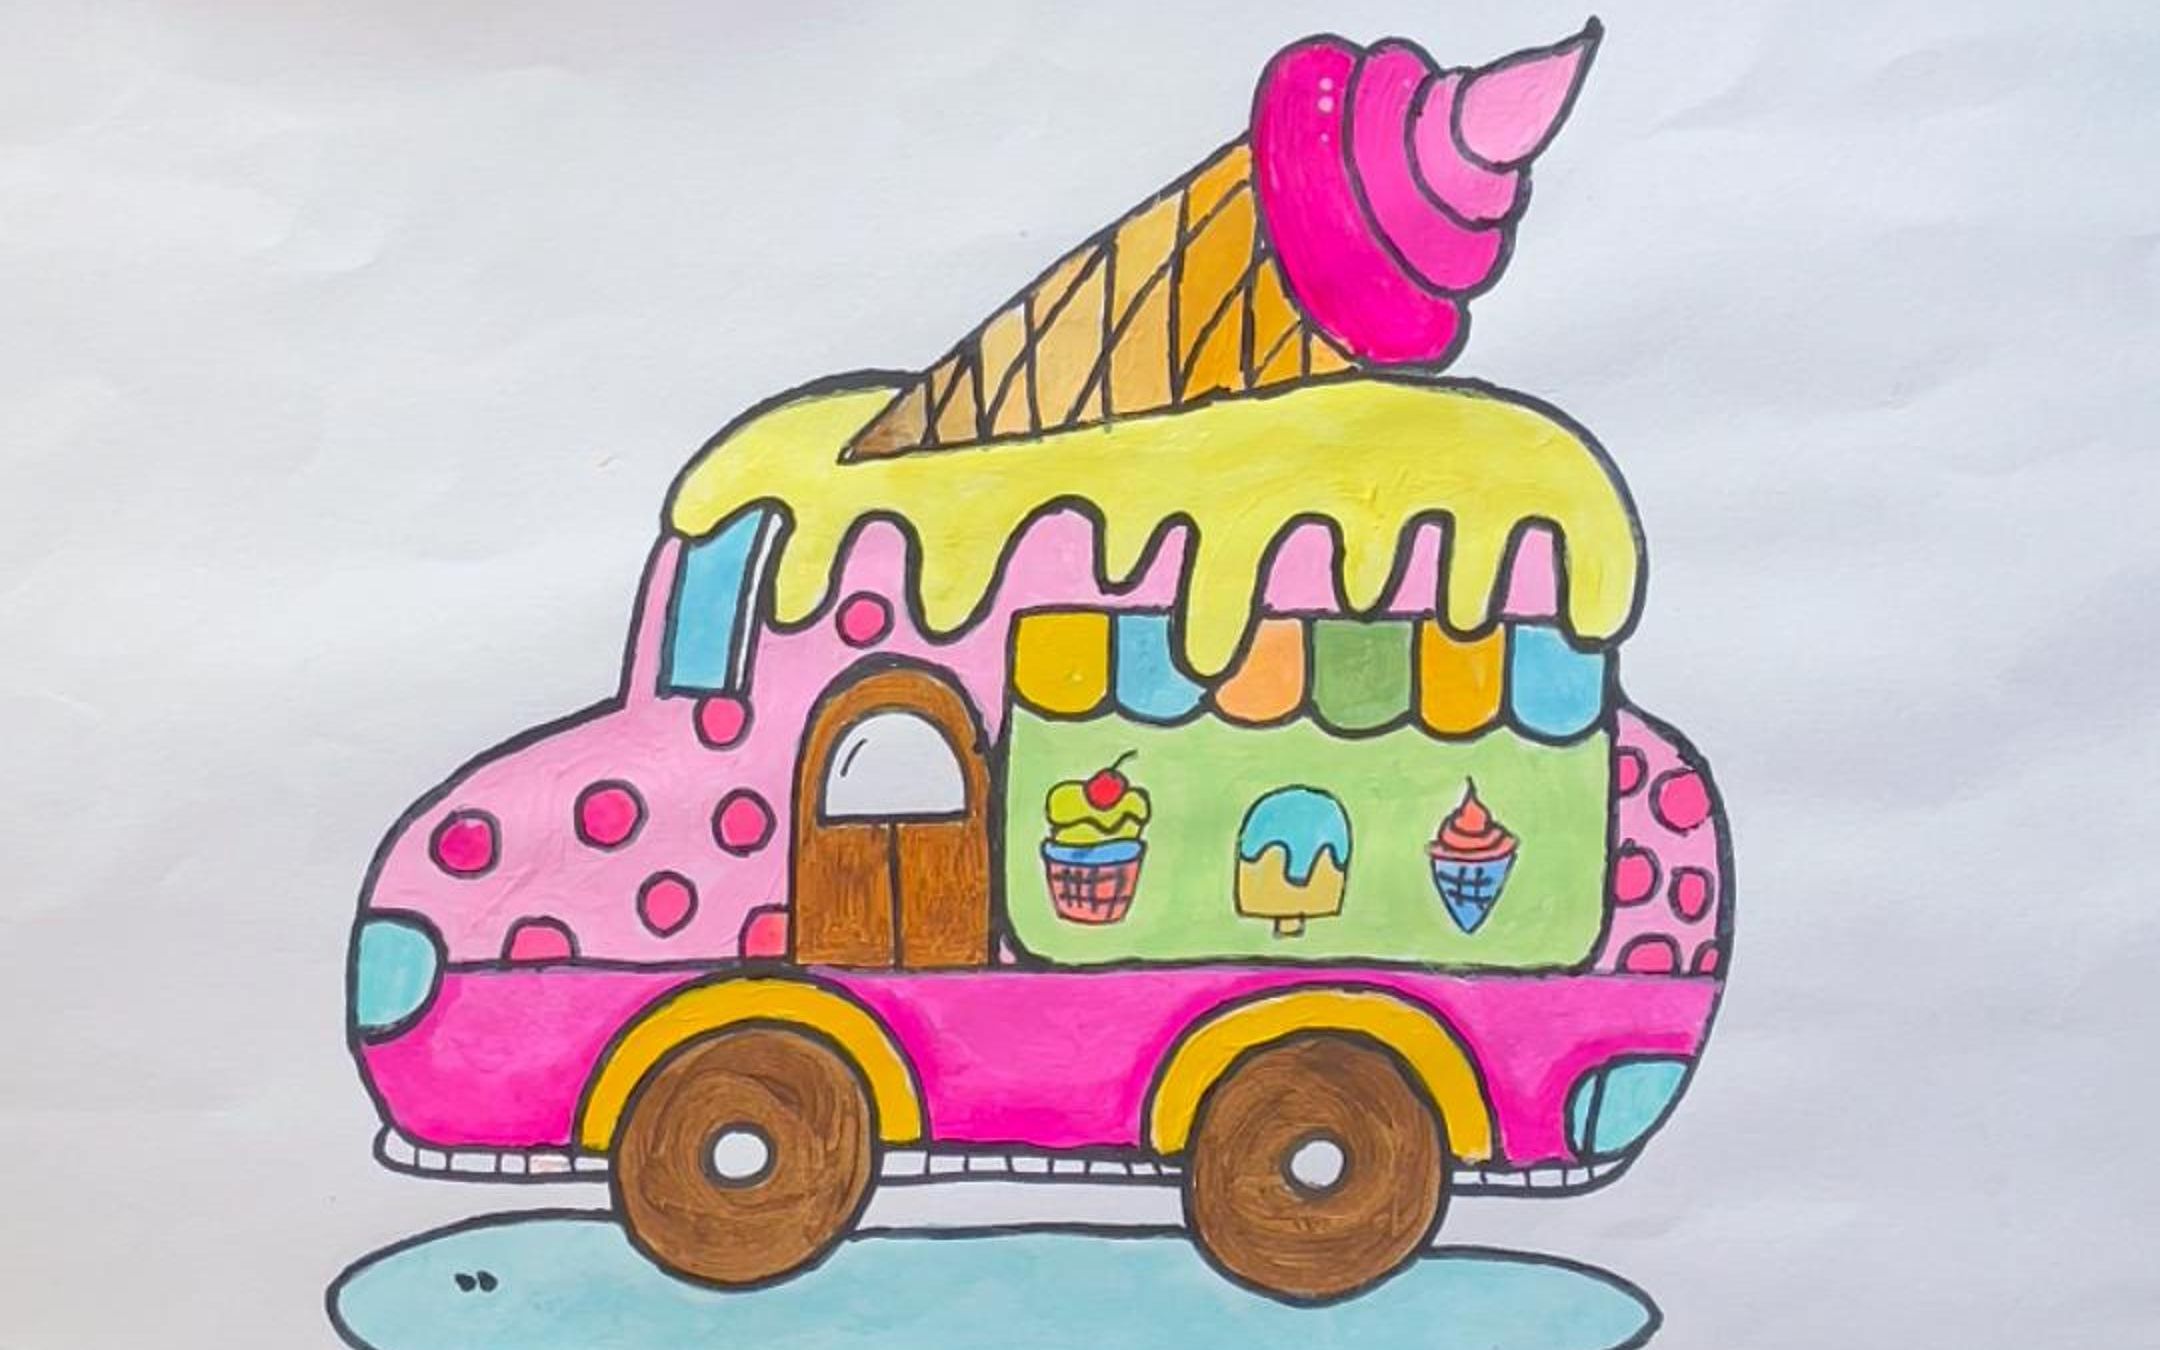 冰淇淋车简笔画 手帐图片